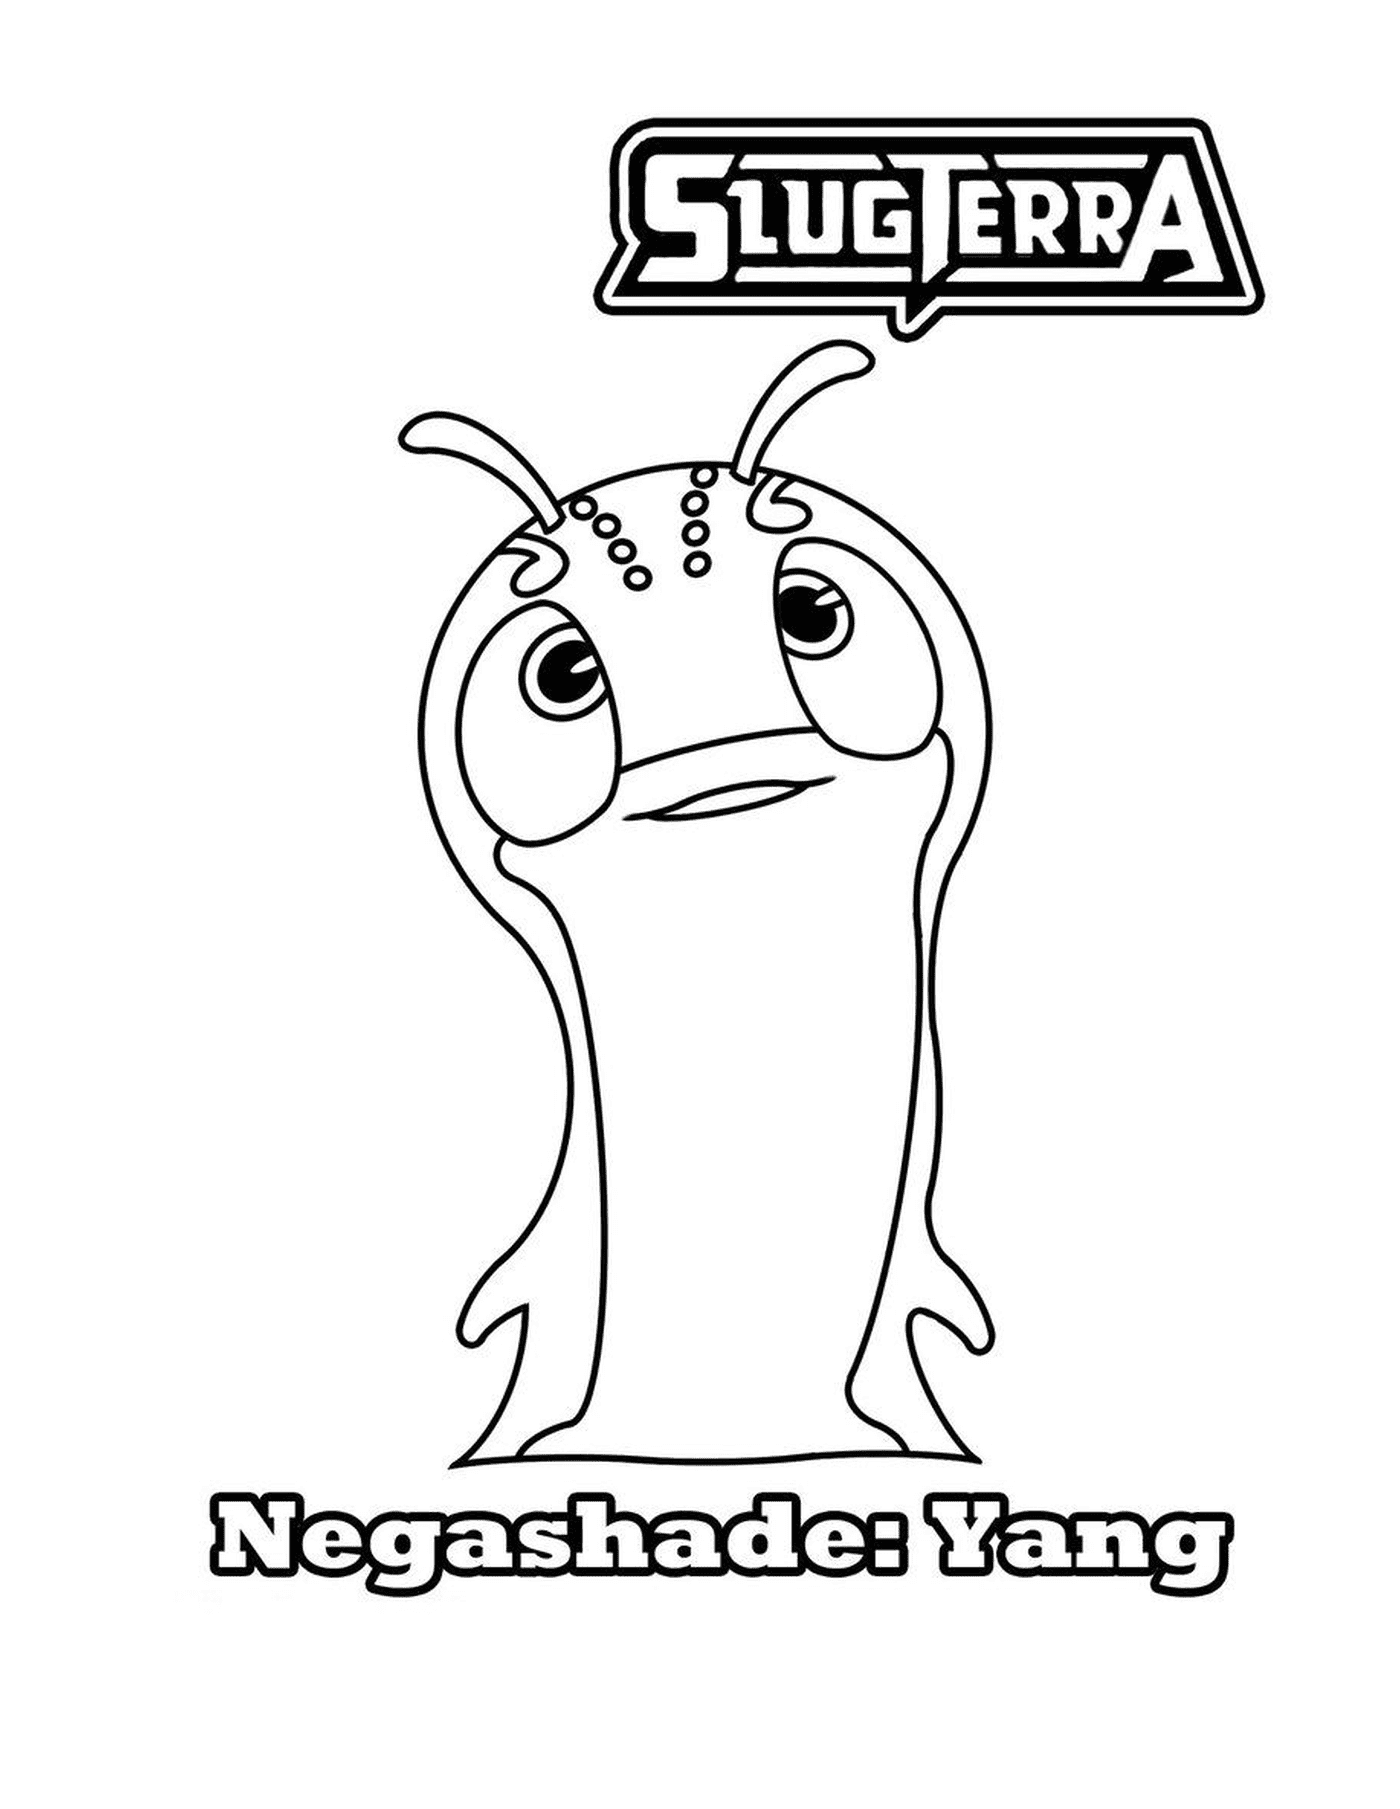  Slugterra-Negashade-Blase-Gespräche 